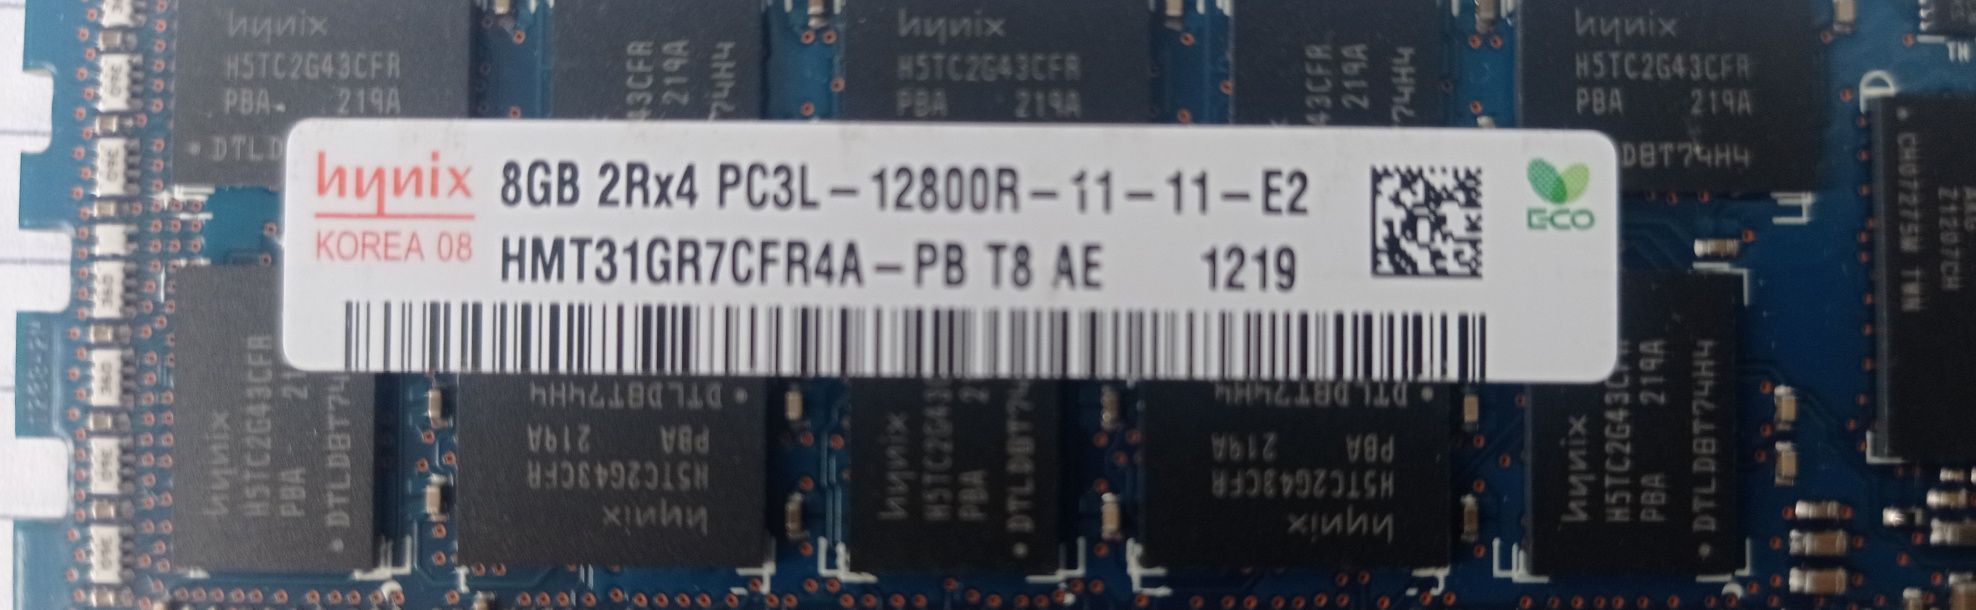 Серверна оперативна пам'ять Hynix 8GB DDR3 2Rx4 PC3L-12800R